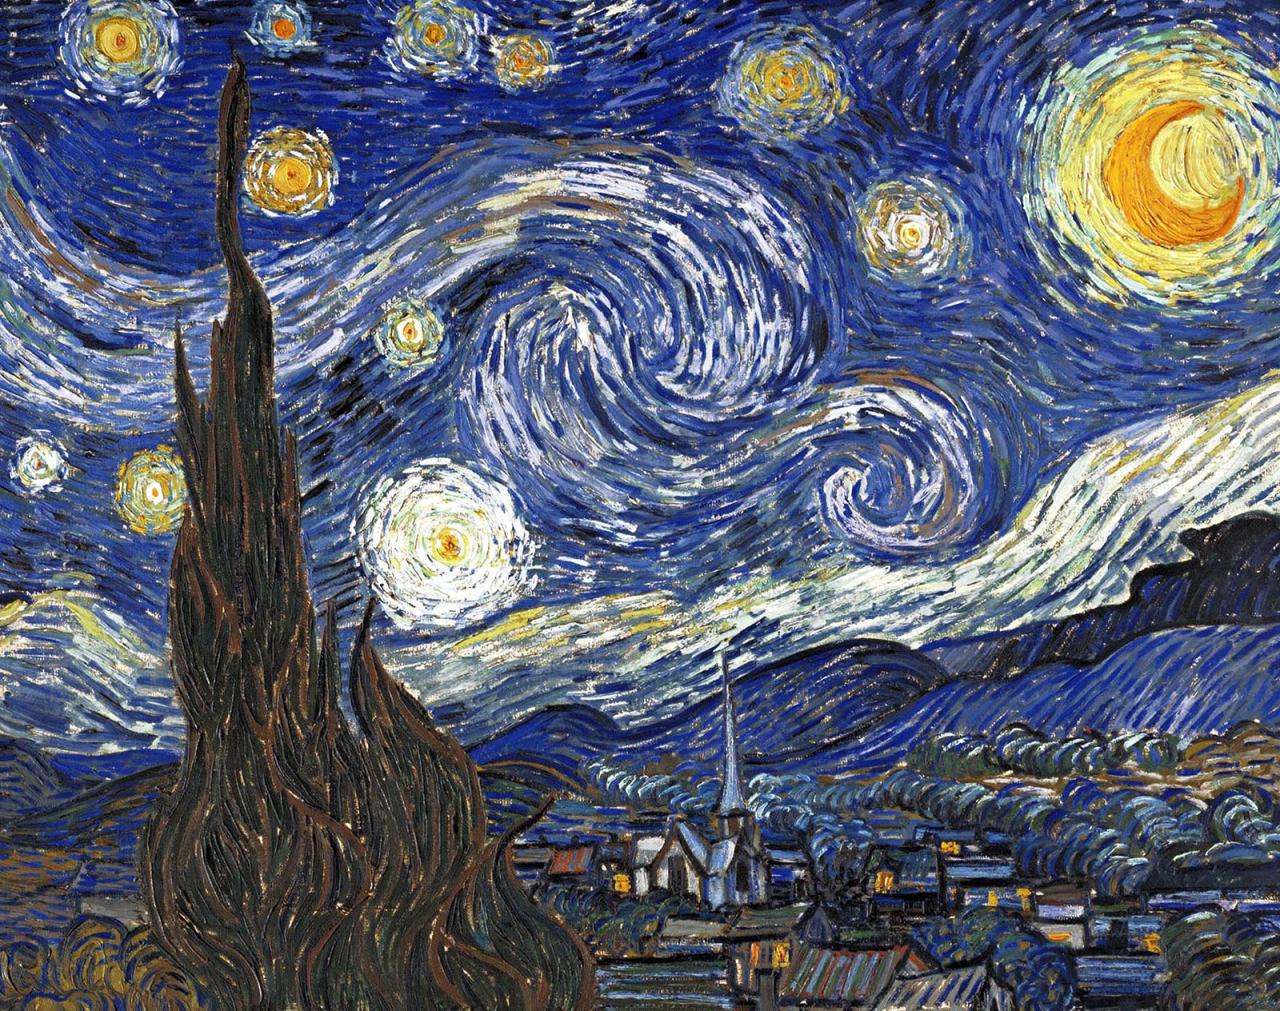 Vincent Van Gogh | Biography, Art, & Facts | Britannica